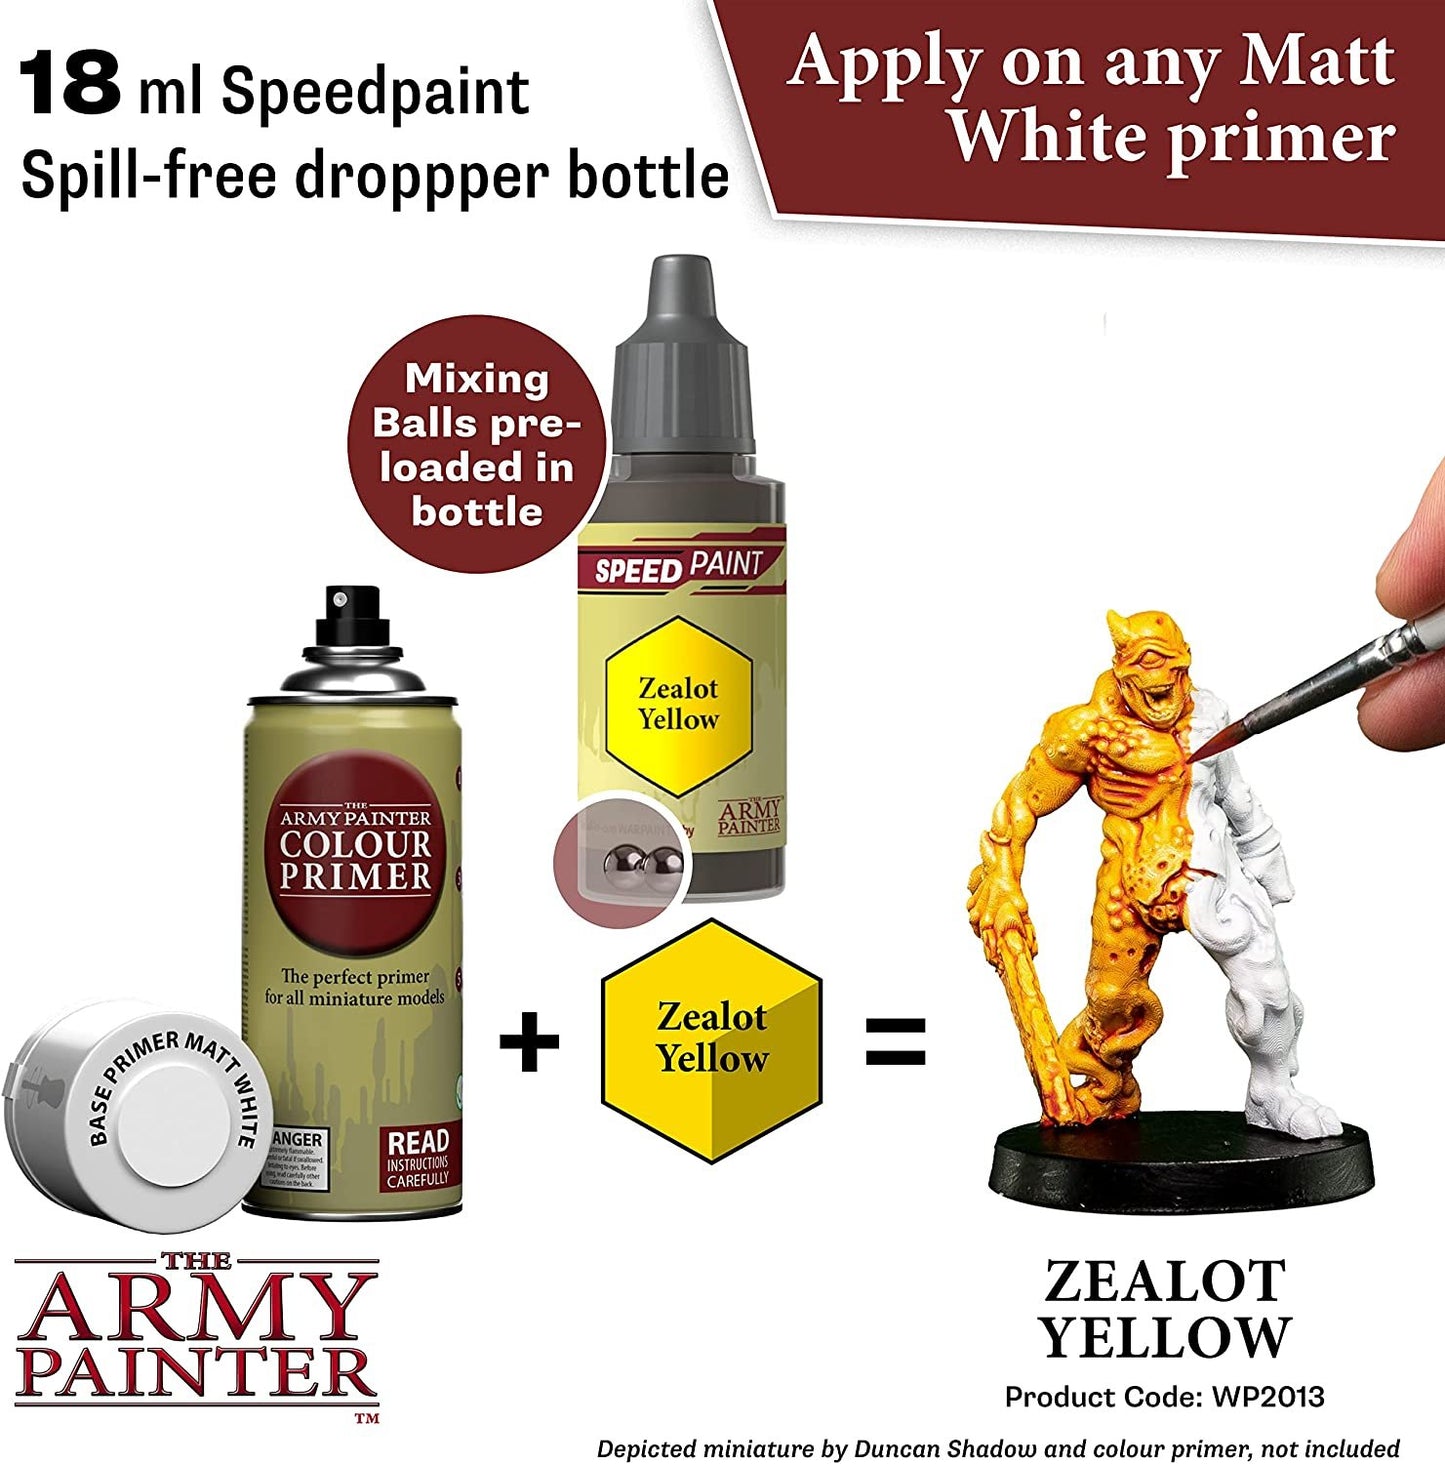 The Army Painter: Speedpaint 2.0 Zealot Yellow (18ml), 3,39 €